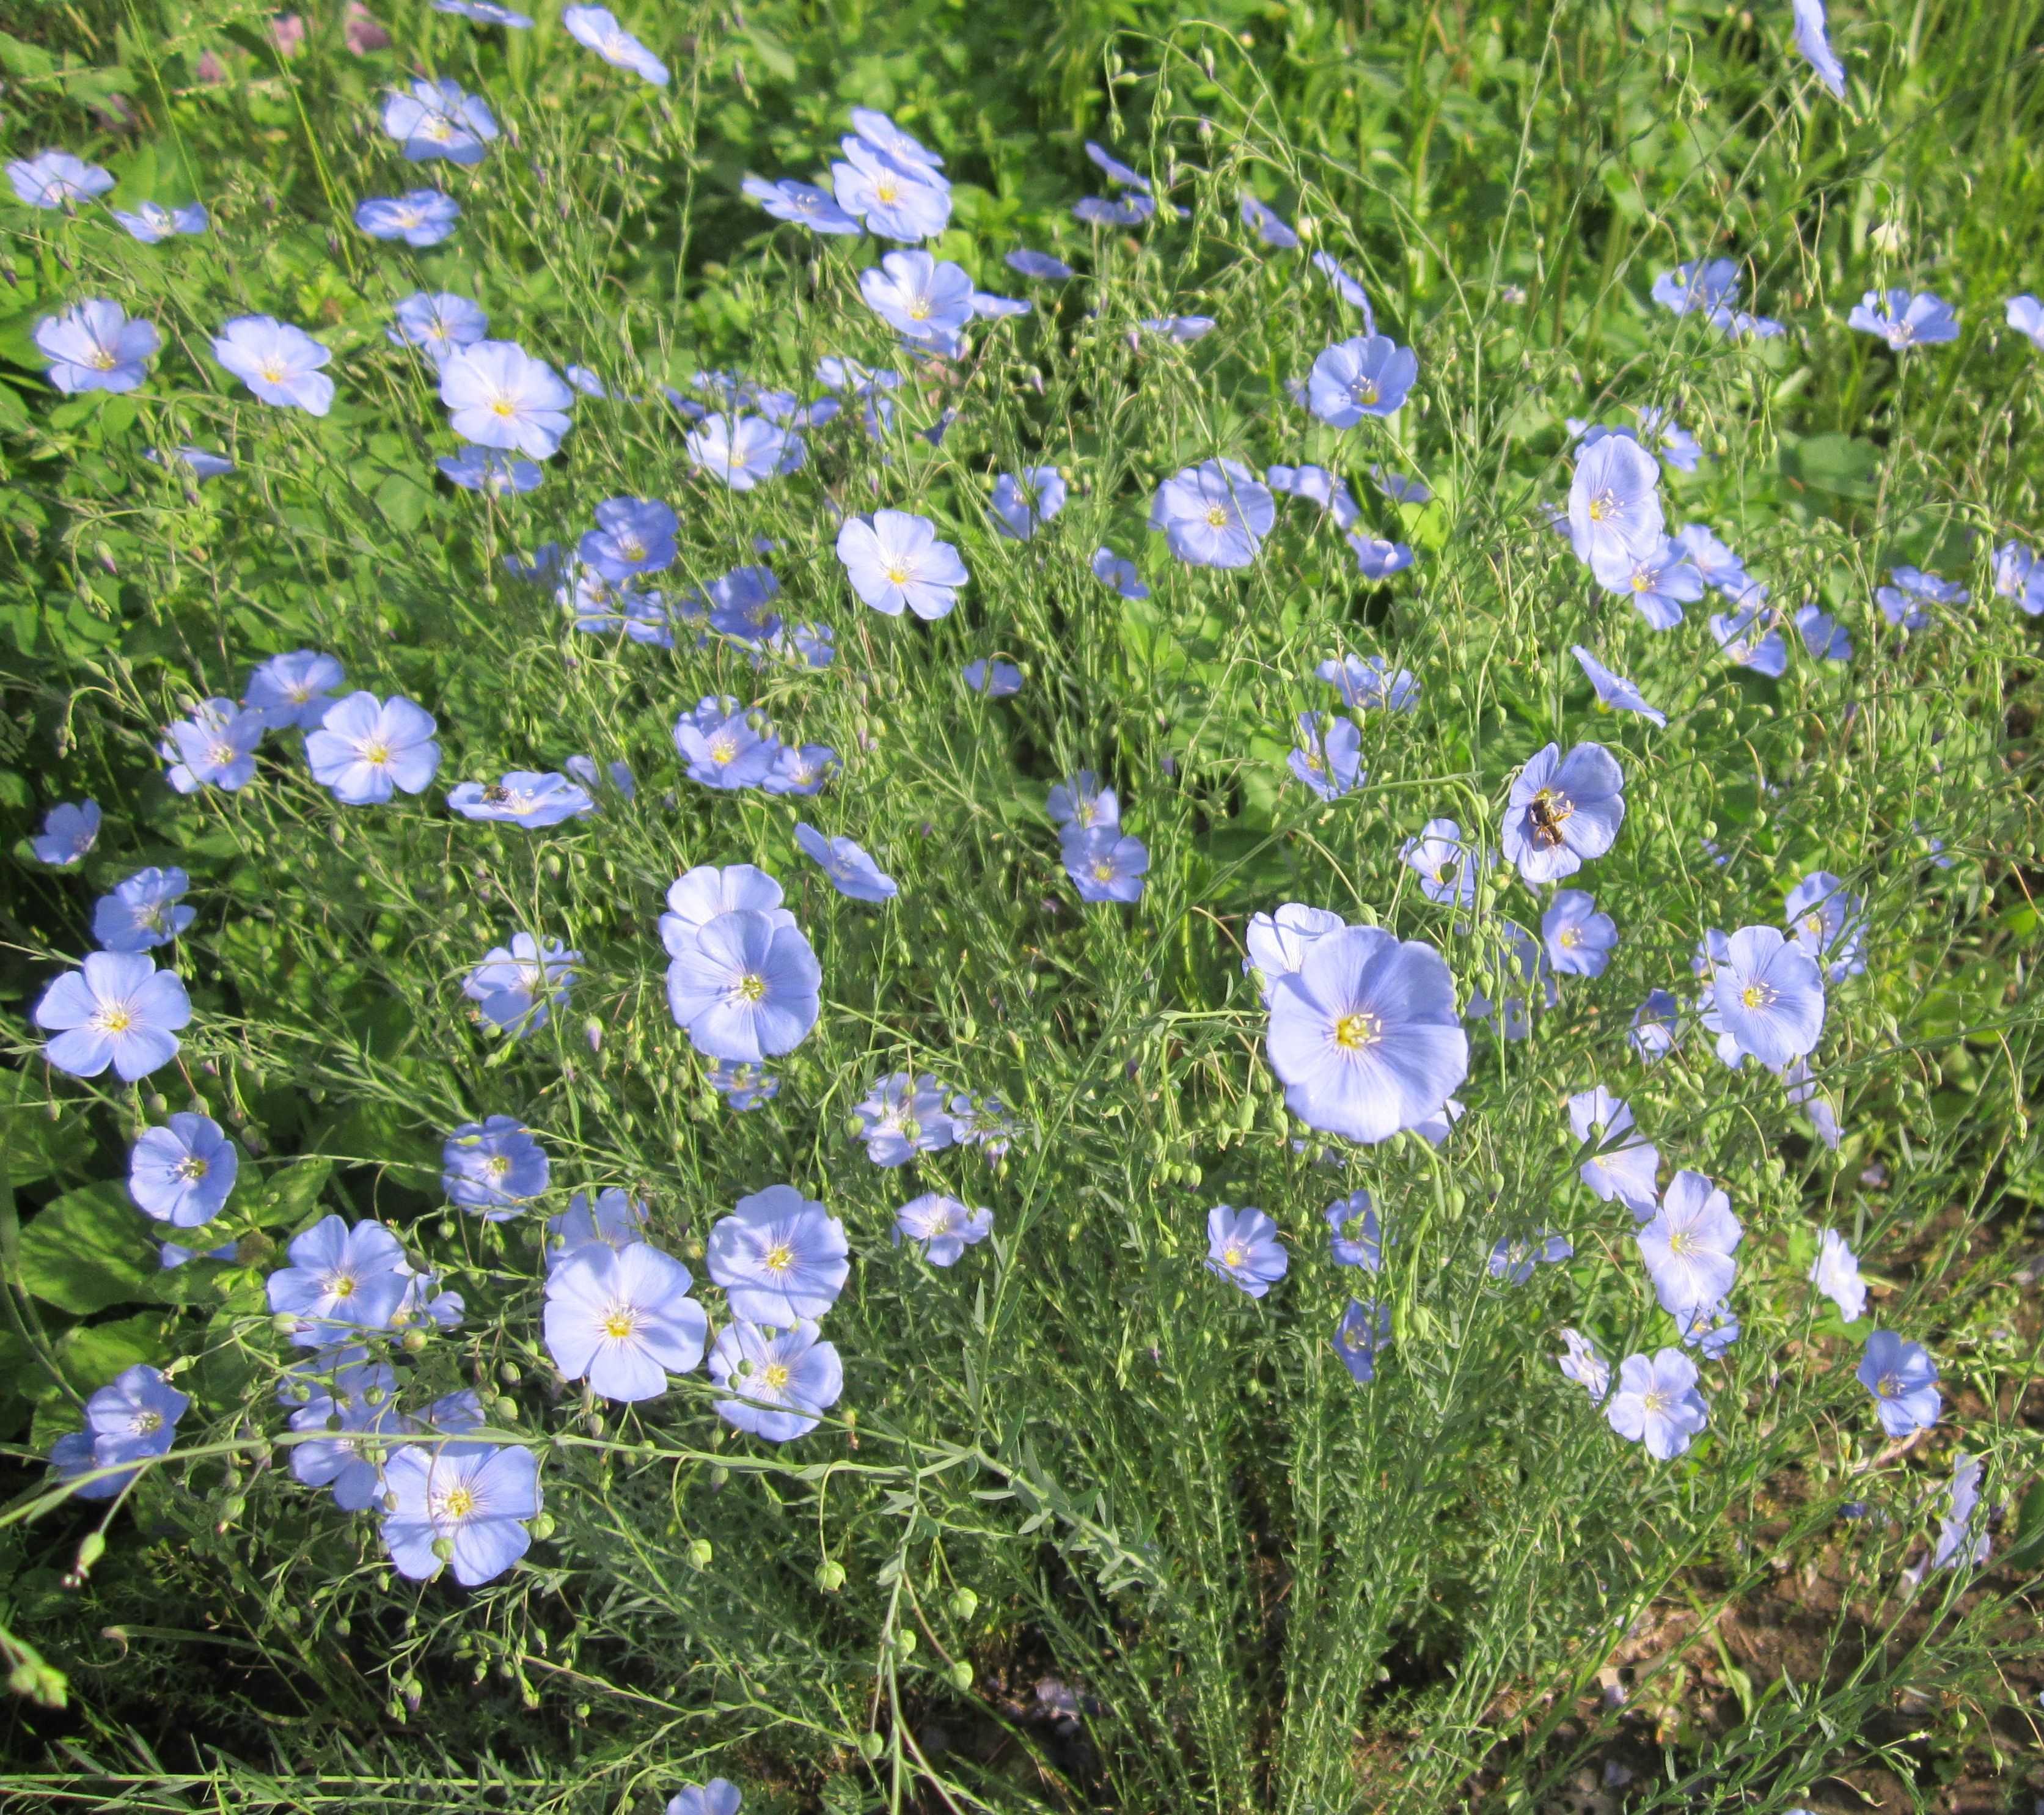 Лен голубой многолетний выращивание и уход в открытом грунте, посадка и размножение сорта, сочетание в ландшафтном дизайне, фото